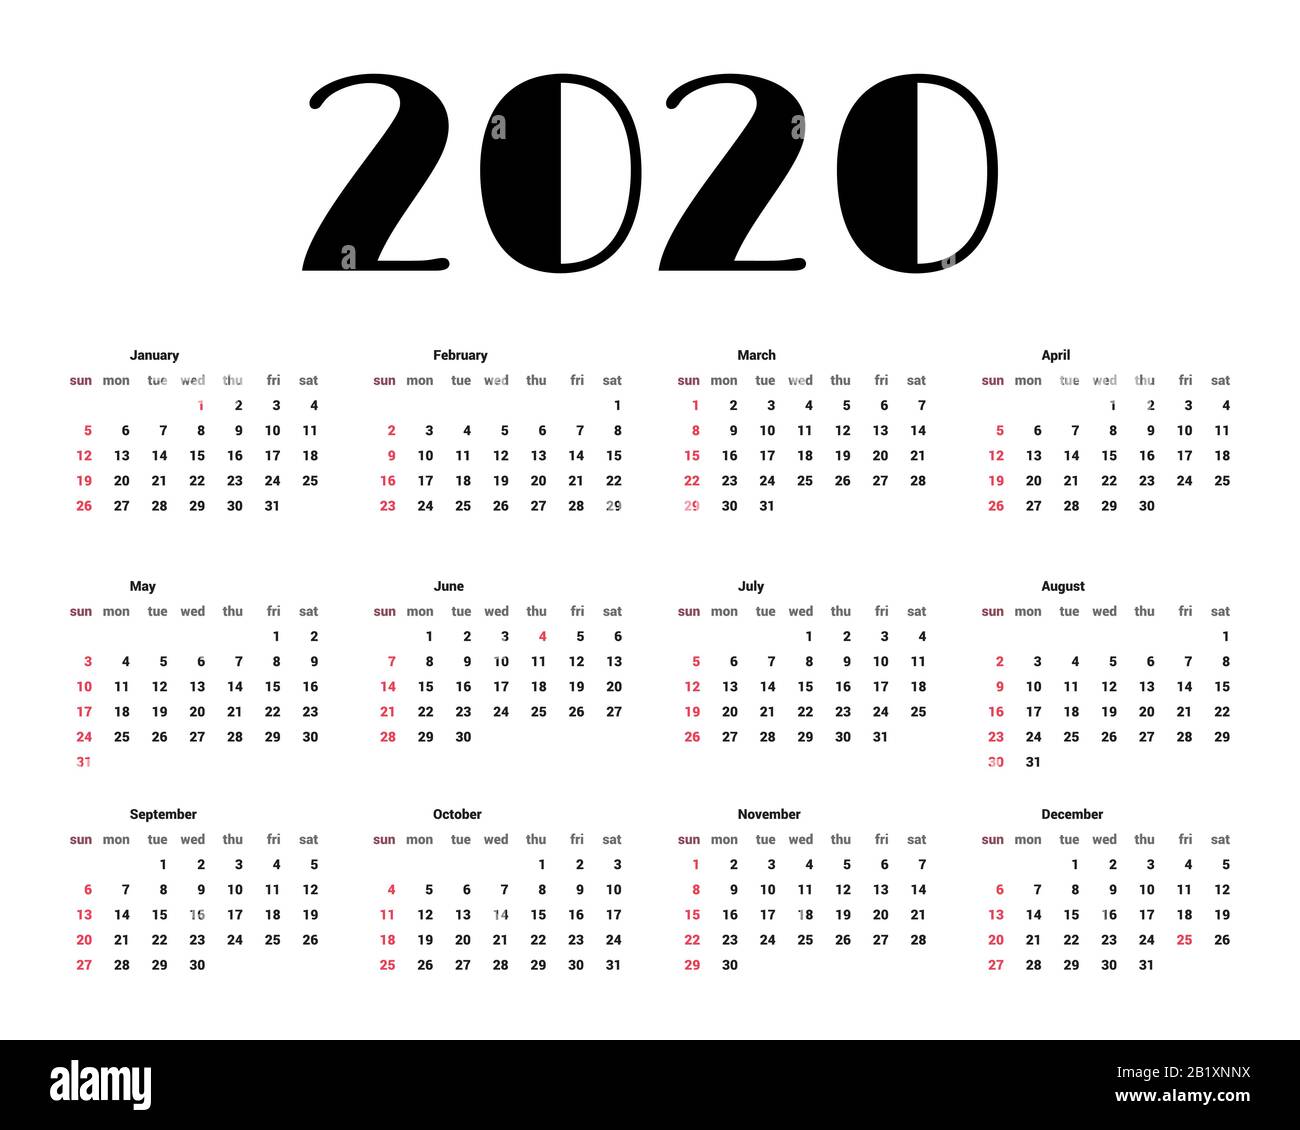 Calendar 2021 Bryn Mawr Academic Calendar 2021 2022